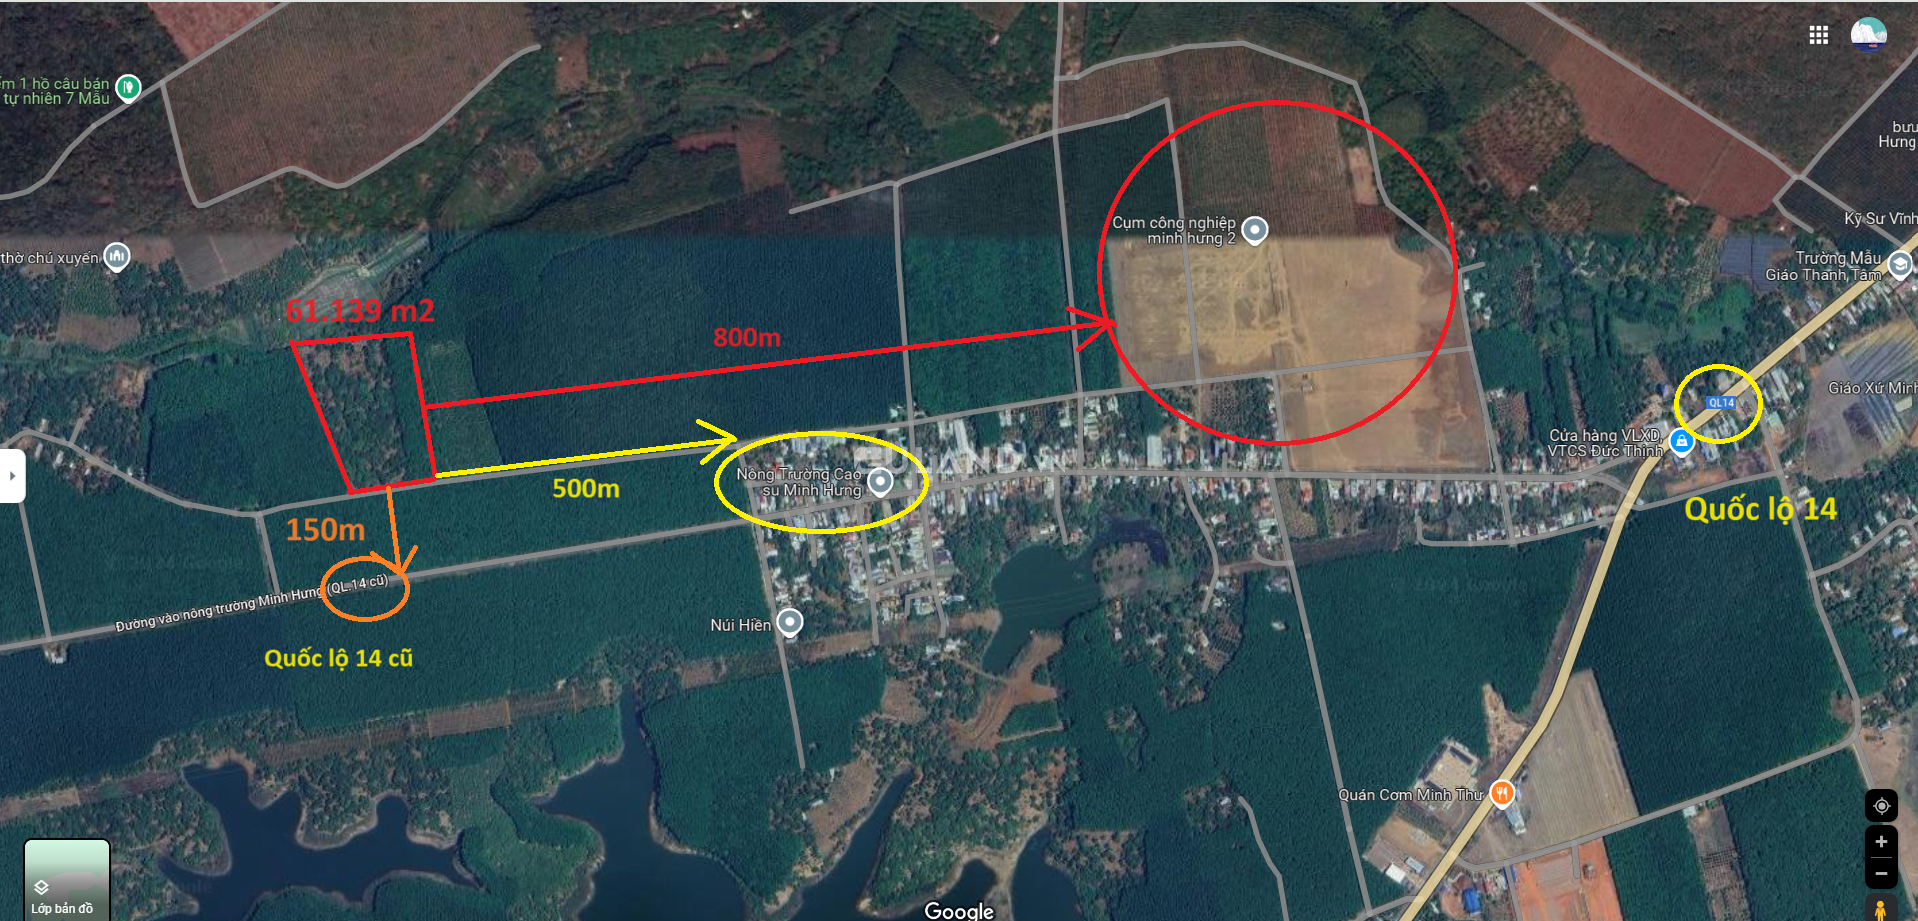 Bán 61.139 m2 đất gần KCN Minh Hưng 2, Bù Đăng, Bình Phước. Giá 4.5 tỷ/hecta (tổng cộng 6 hecta)